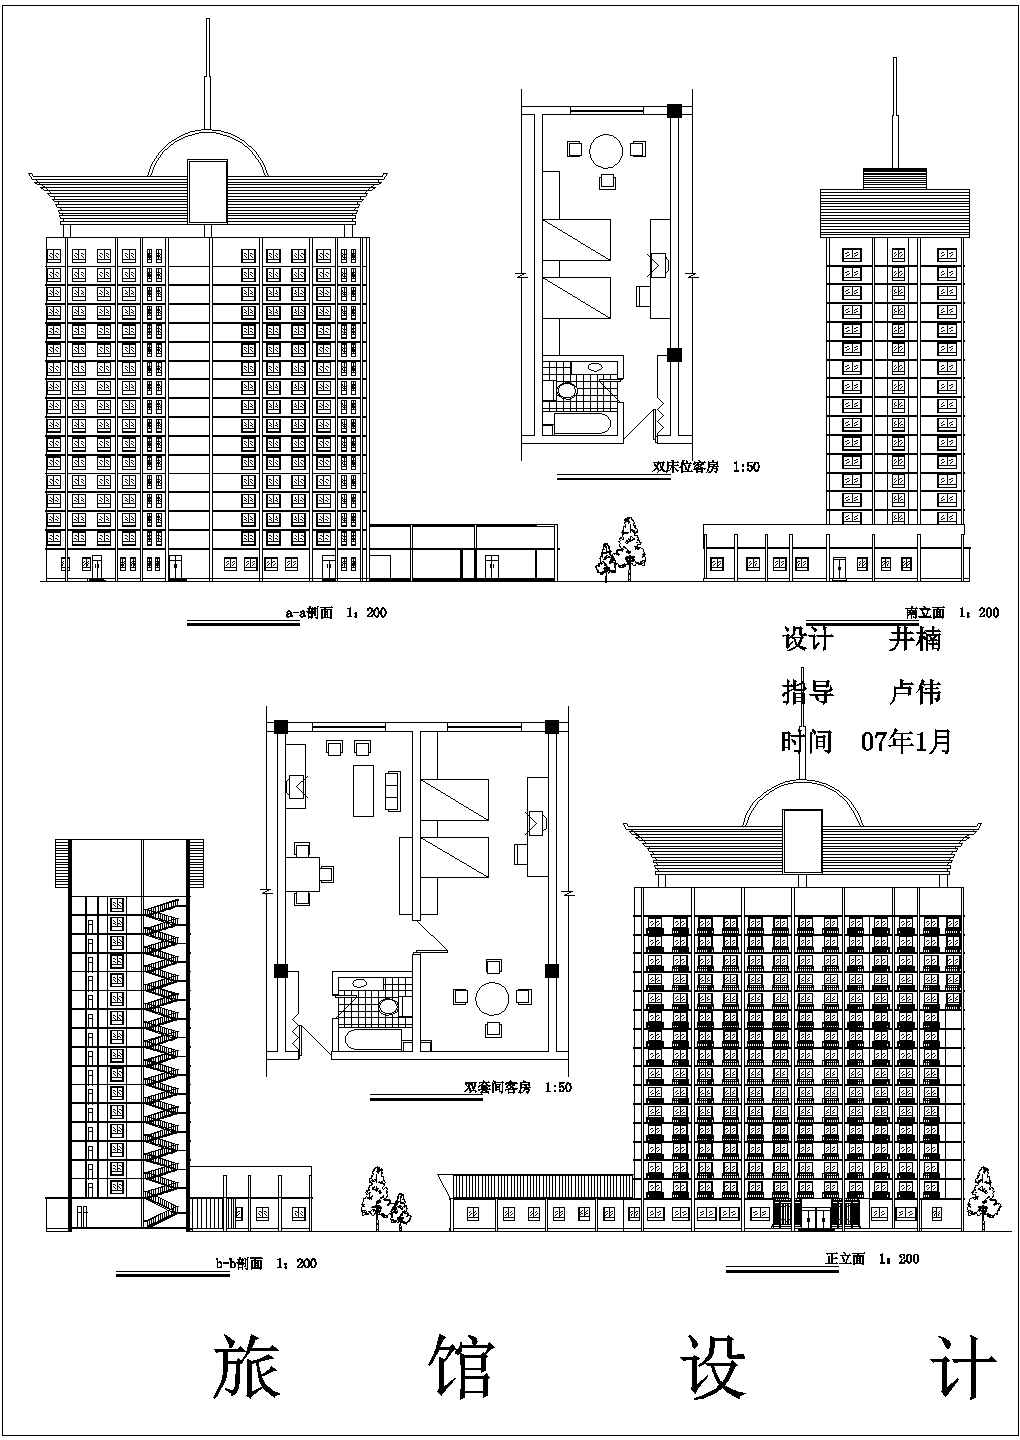 四川省某城市多层平立面旅馆设计图